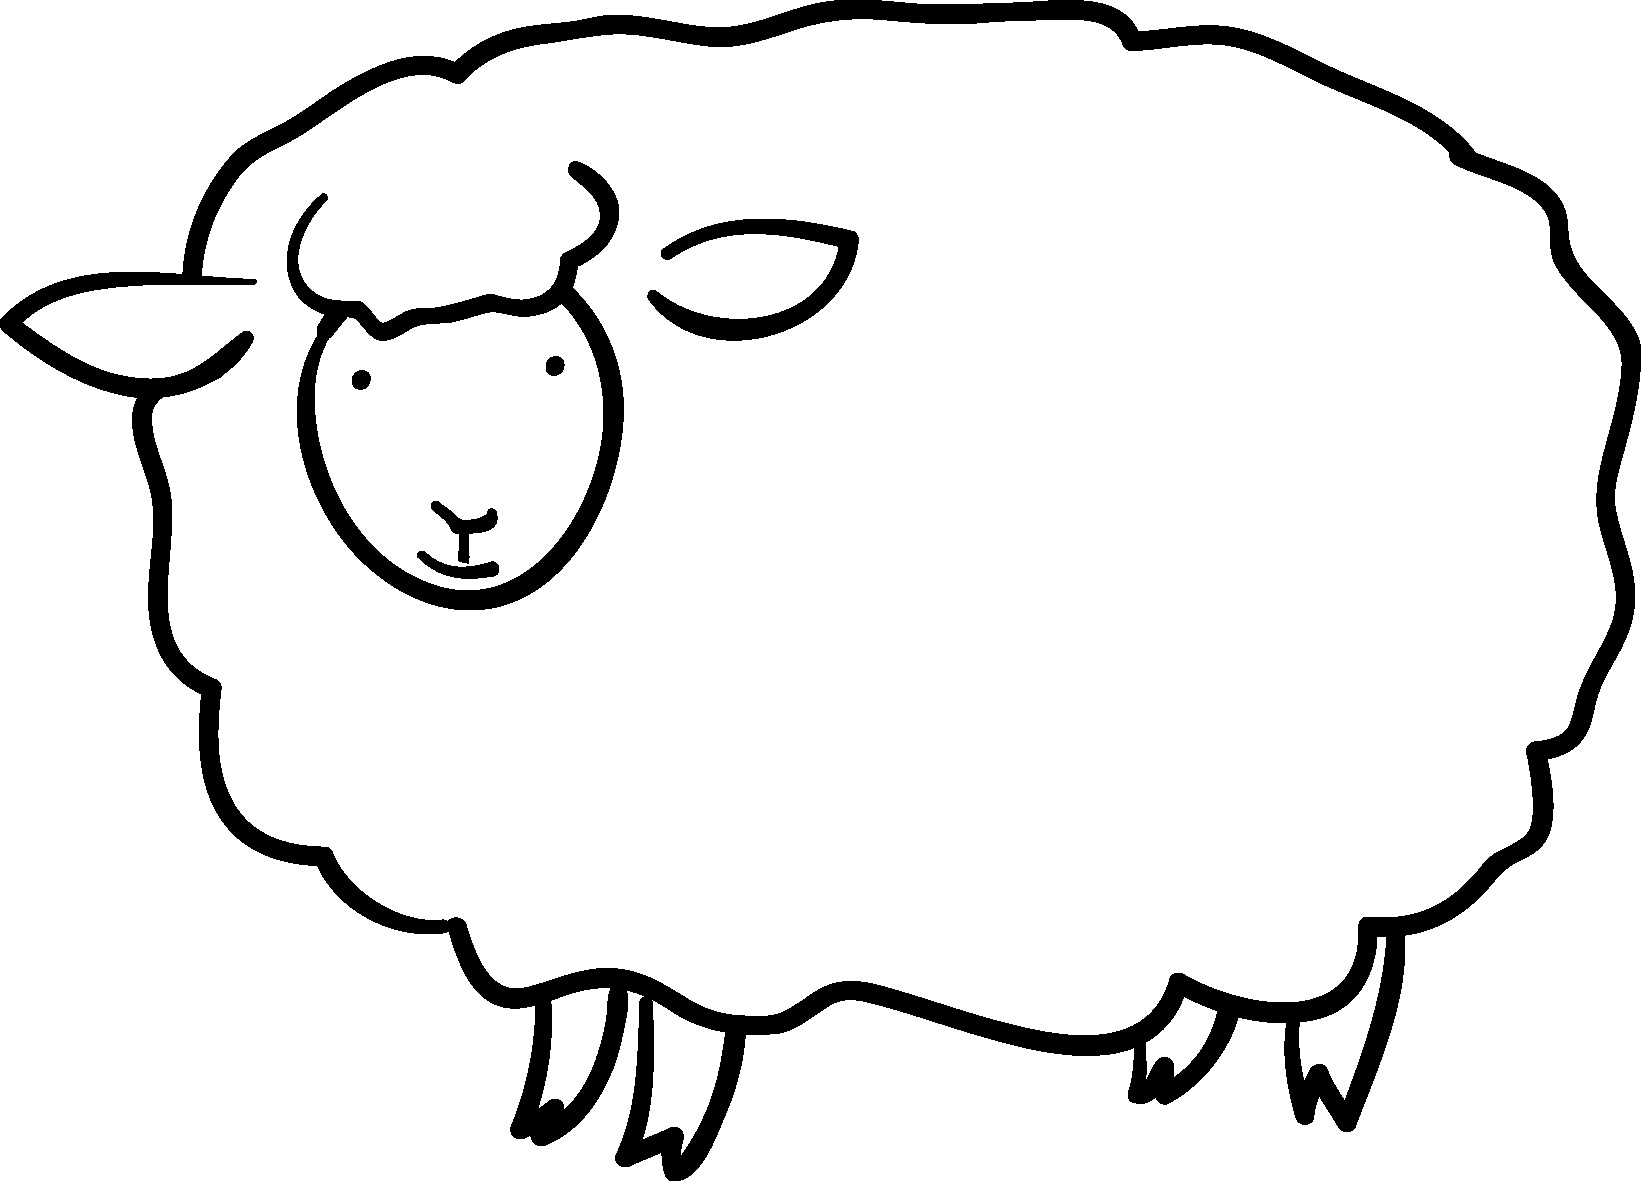 綺麗な羊 イラスト フリー 白黒 最高の動物画像